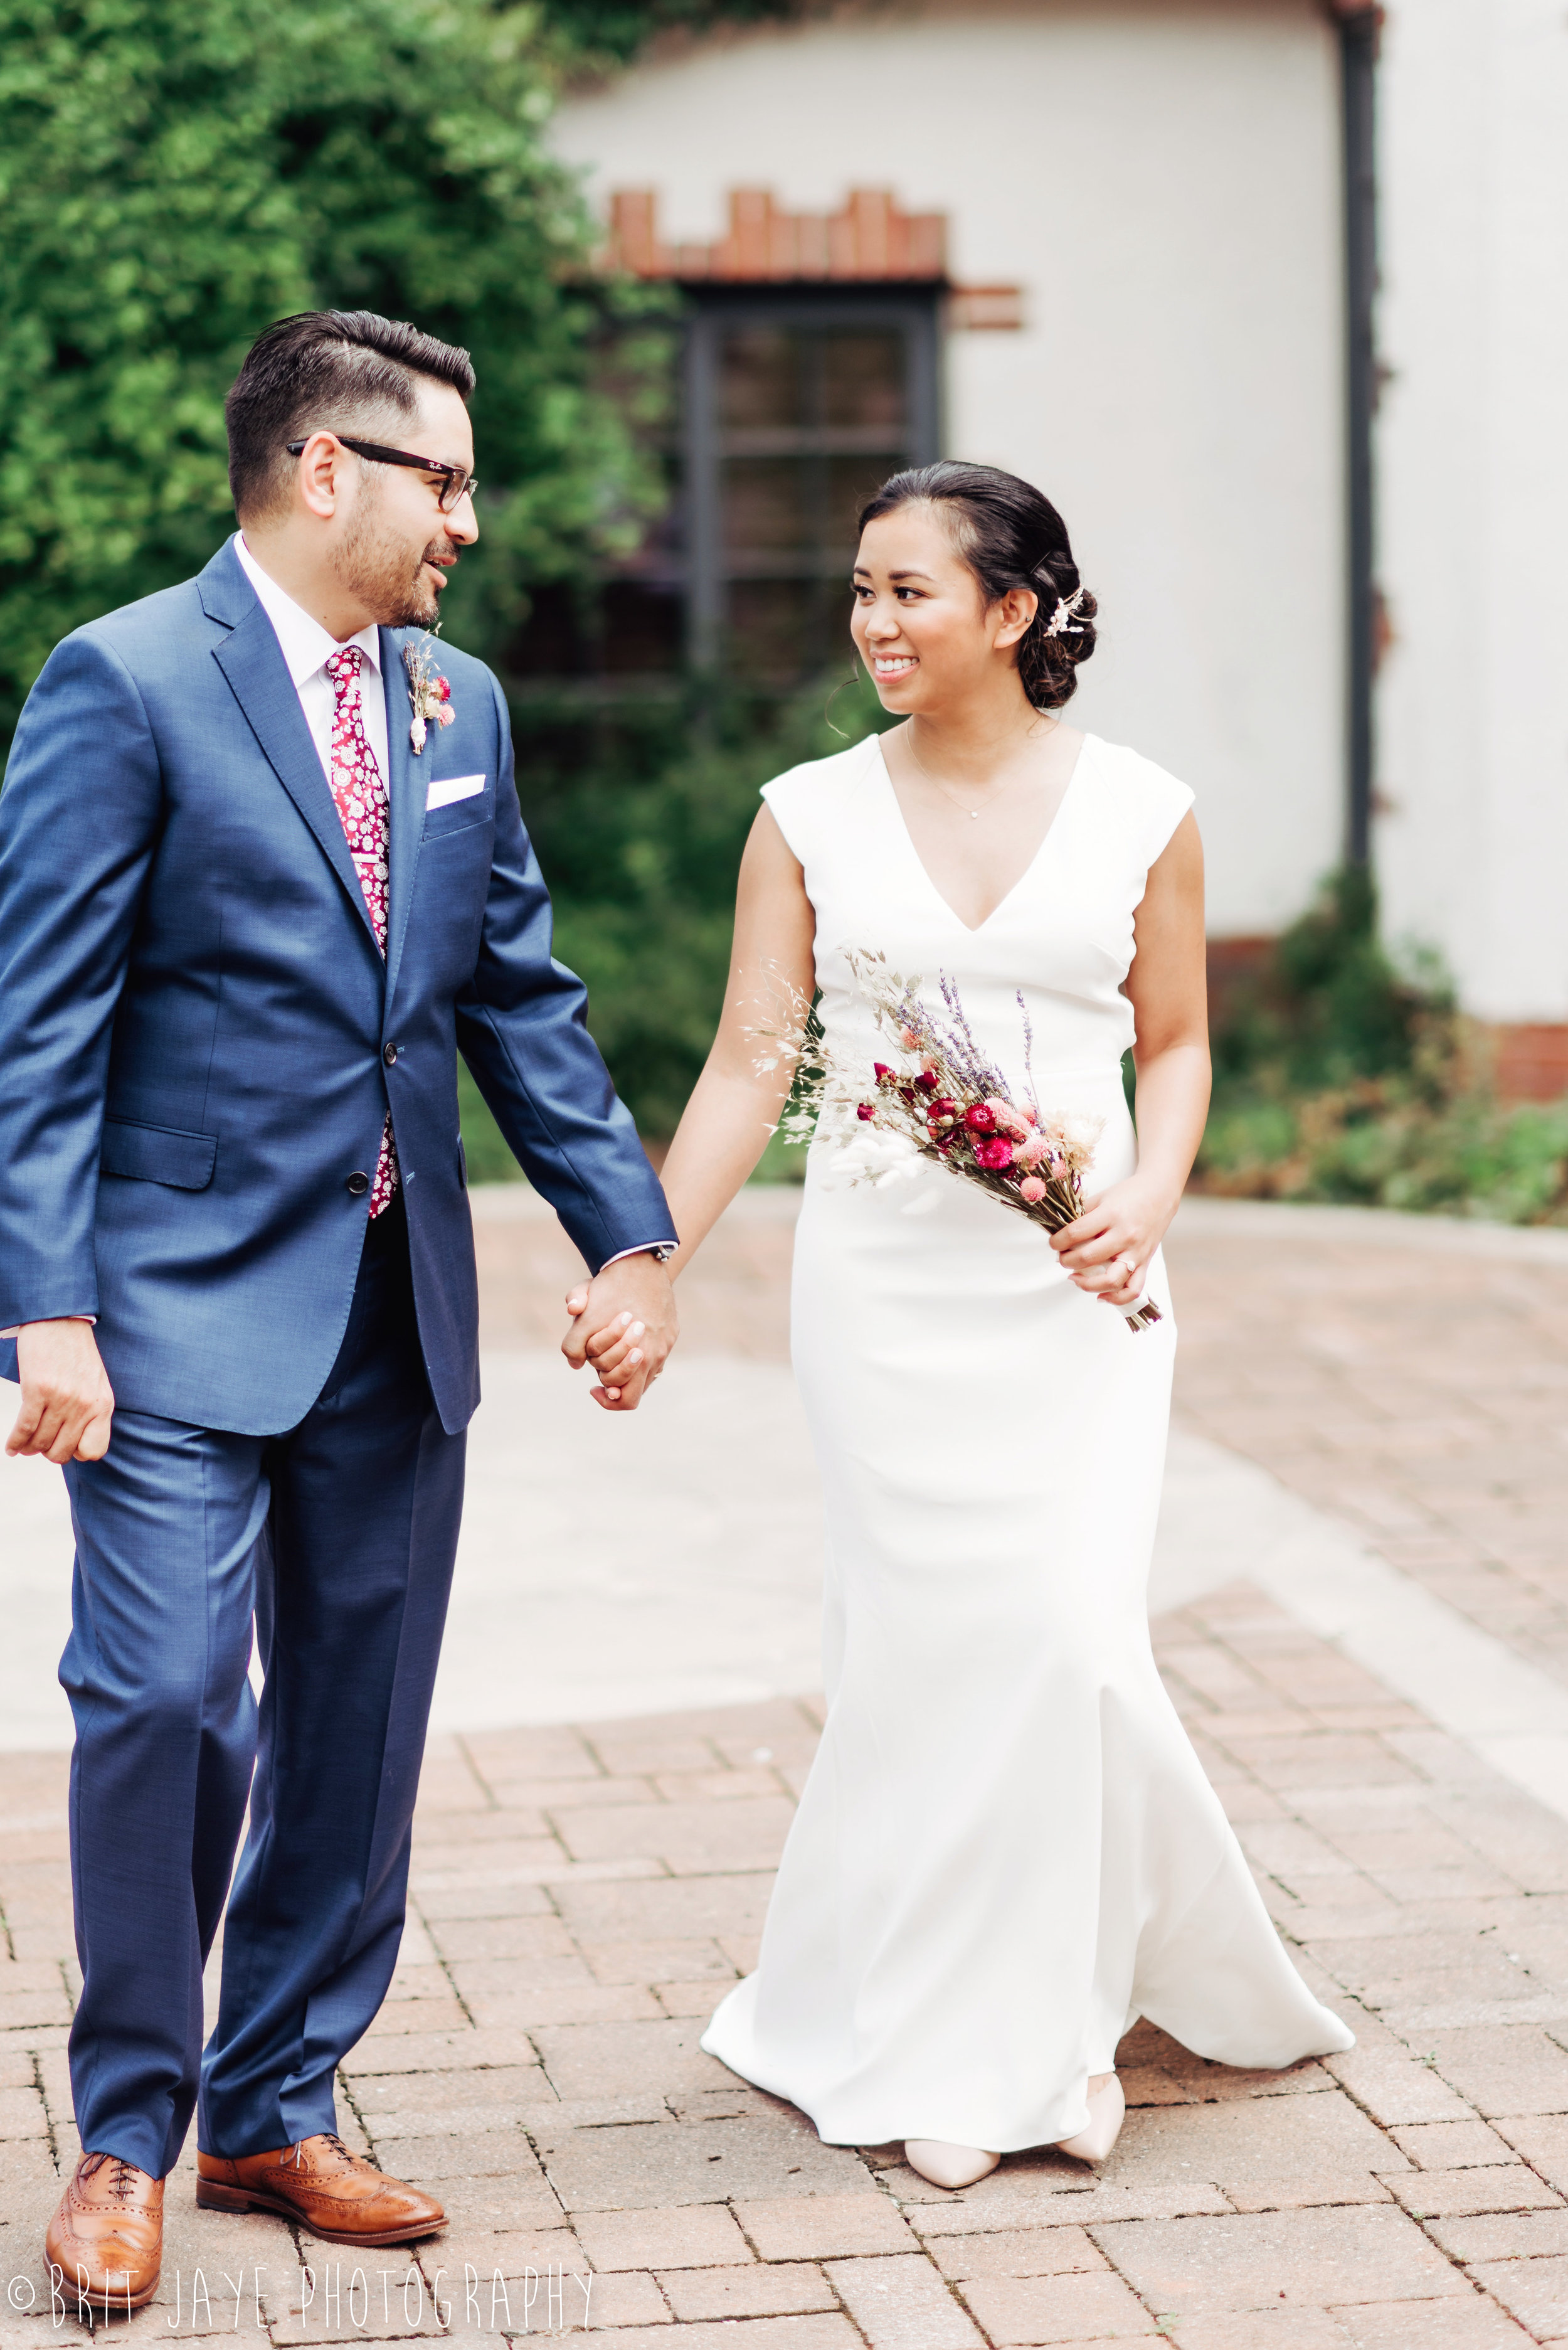 Darling Wedding at the Oakwood Courthouse — Ohio Wedding Photography